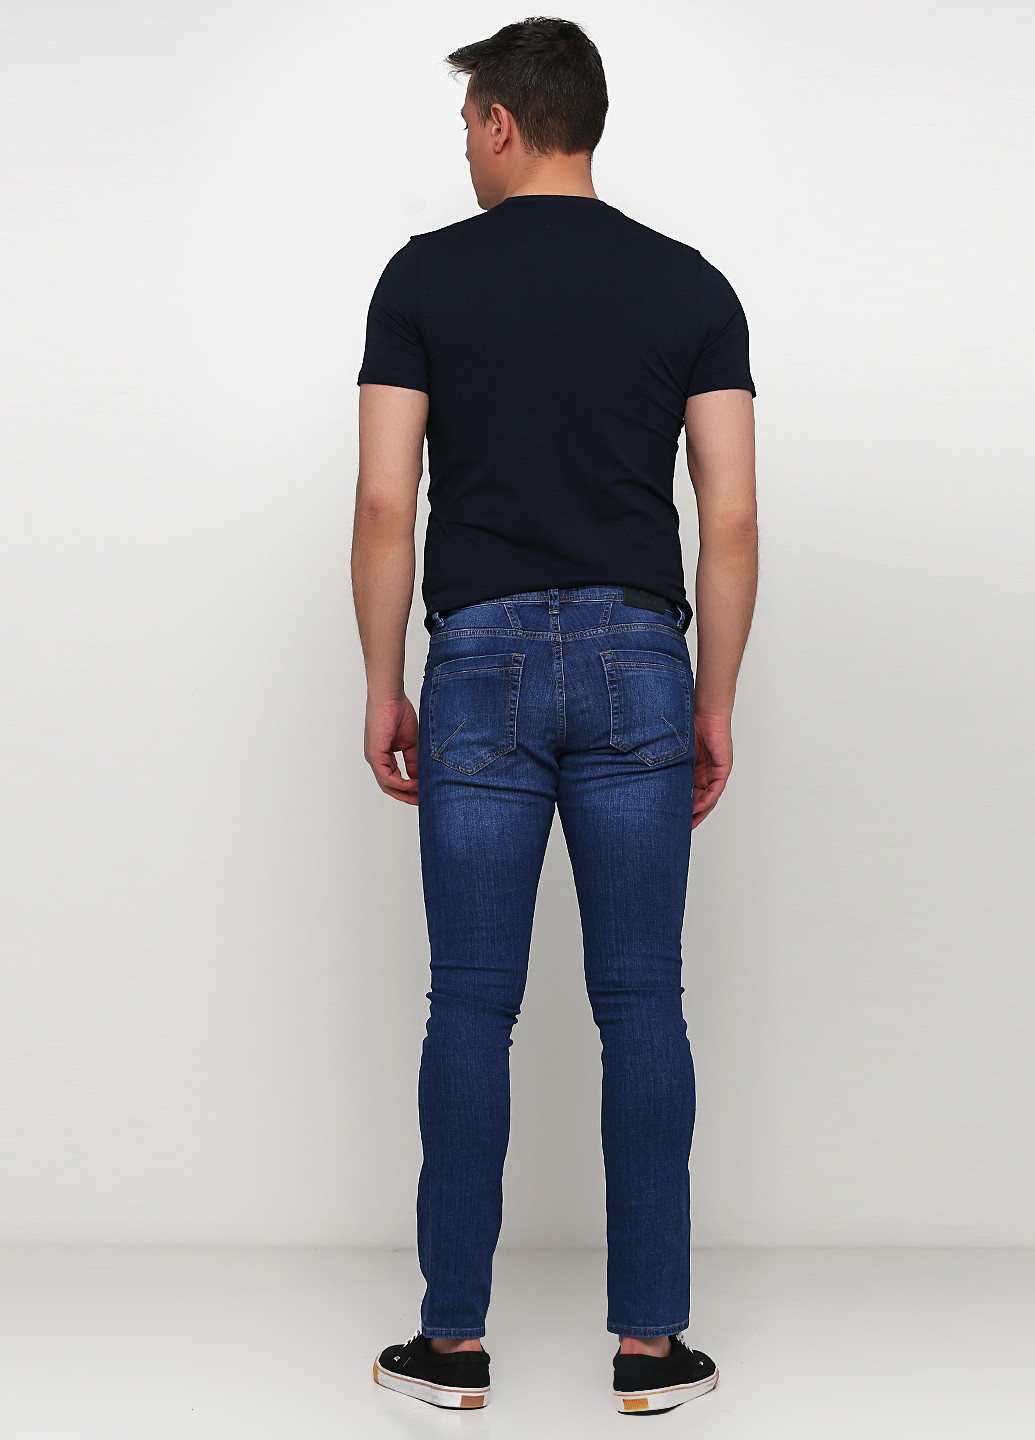 Синие демисезонные зауженные джинсы Madoc Jeans